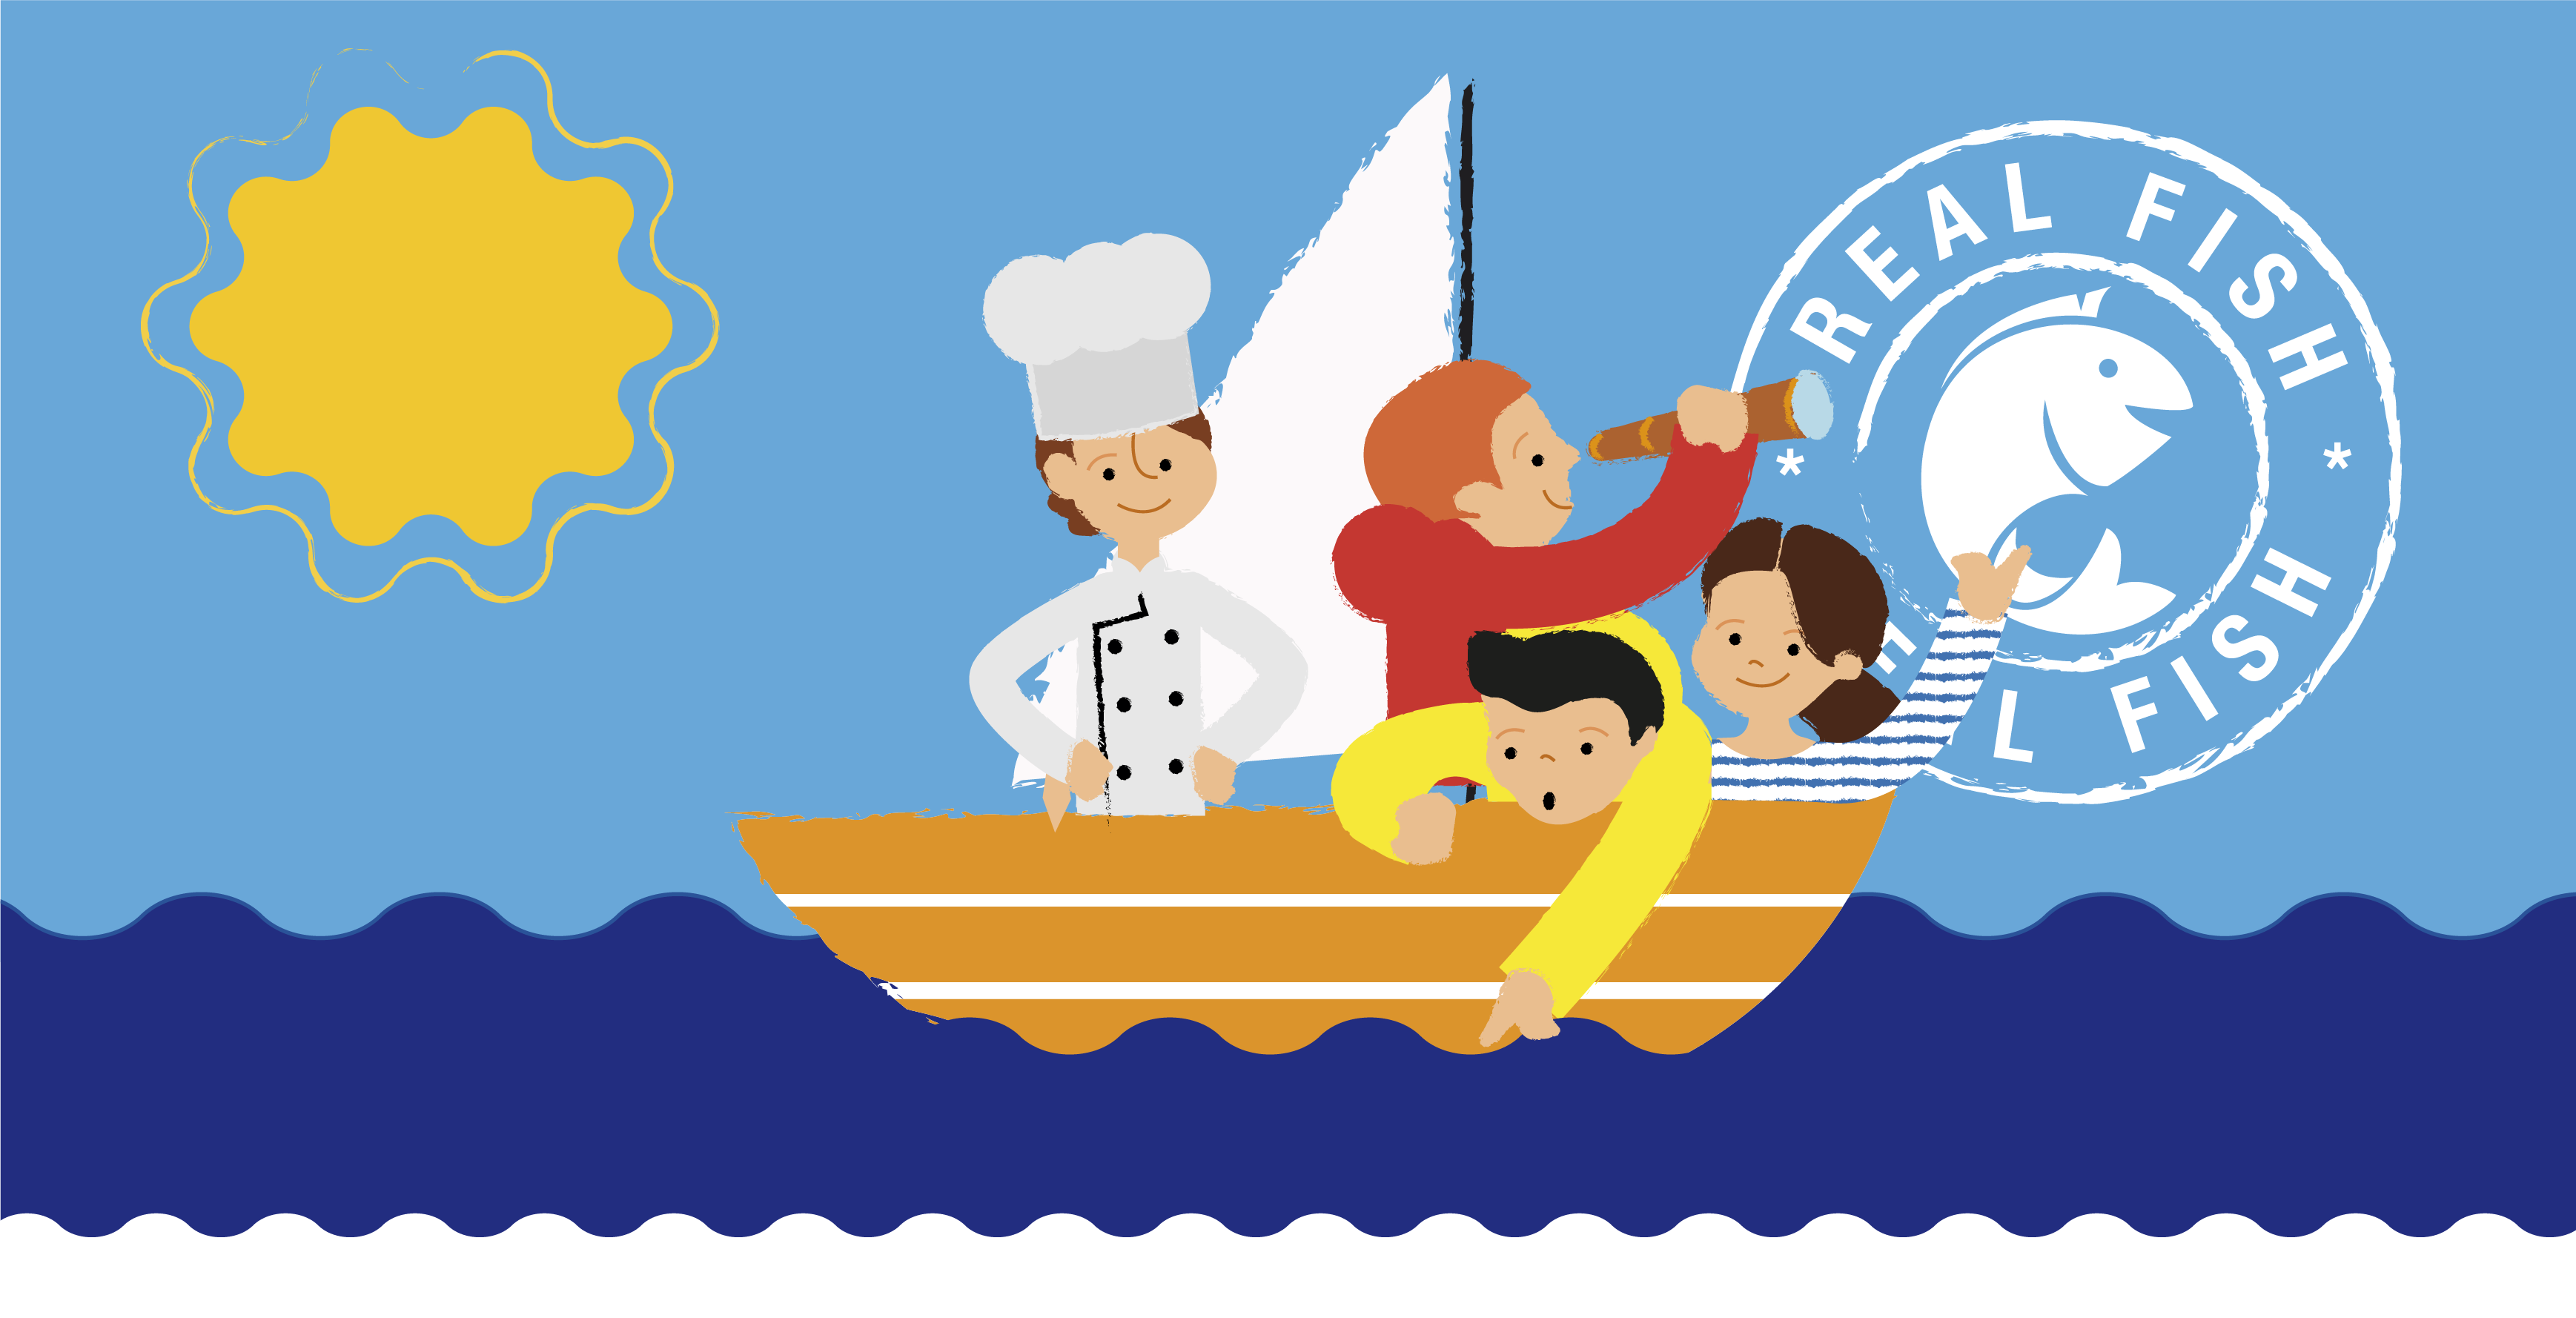 Sara Villanueva illustration real fish boat chef and kids